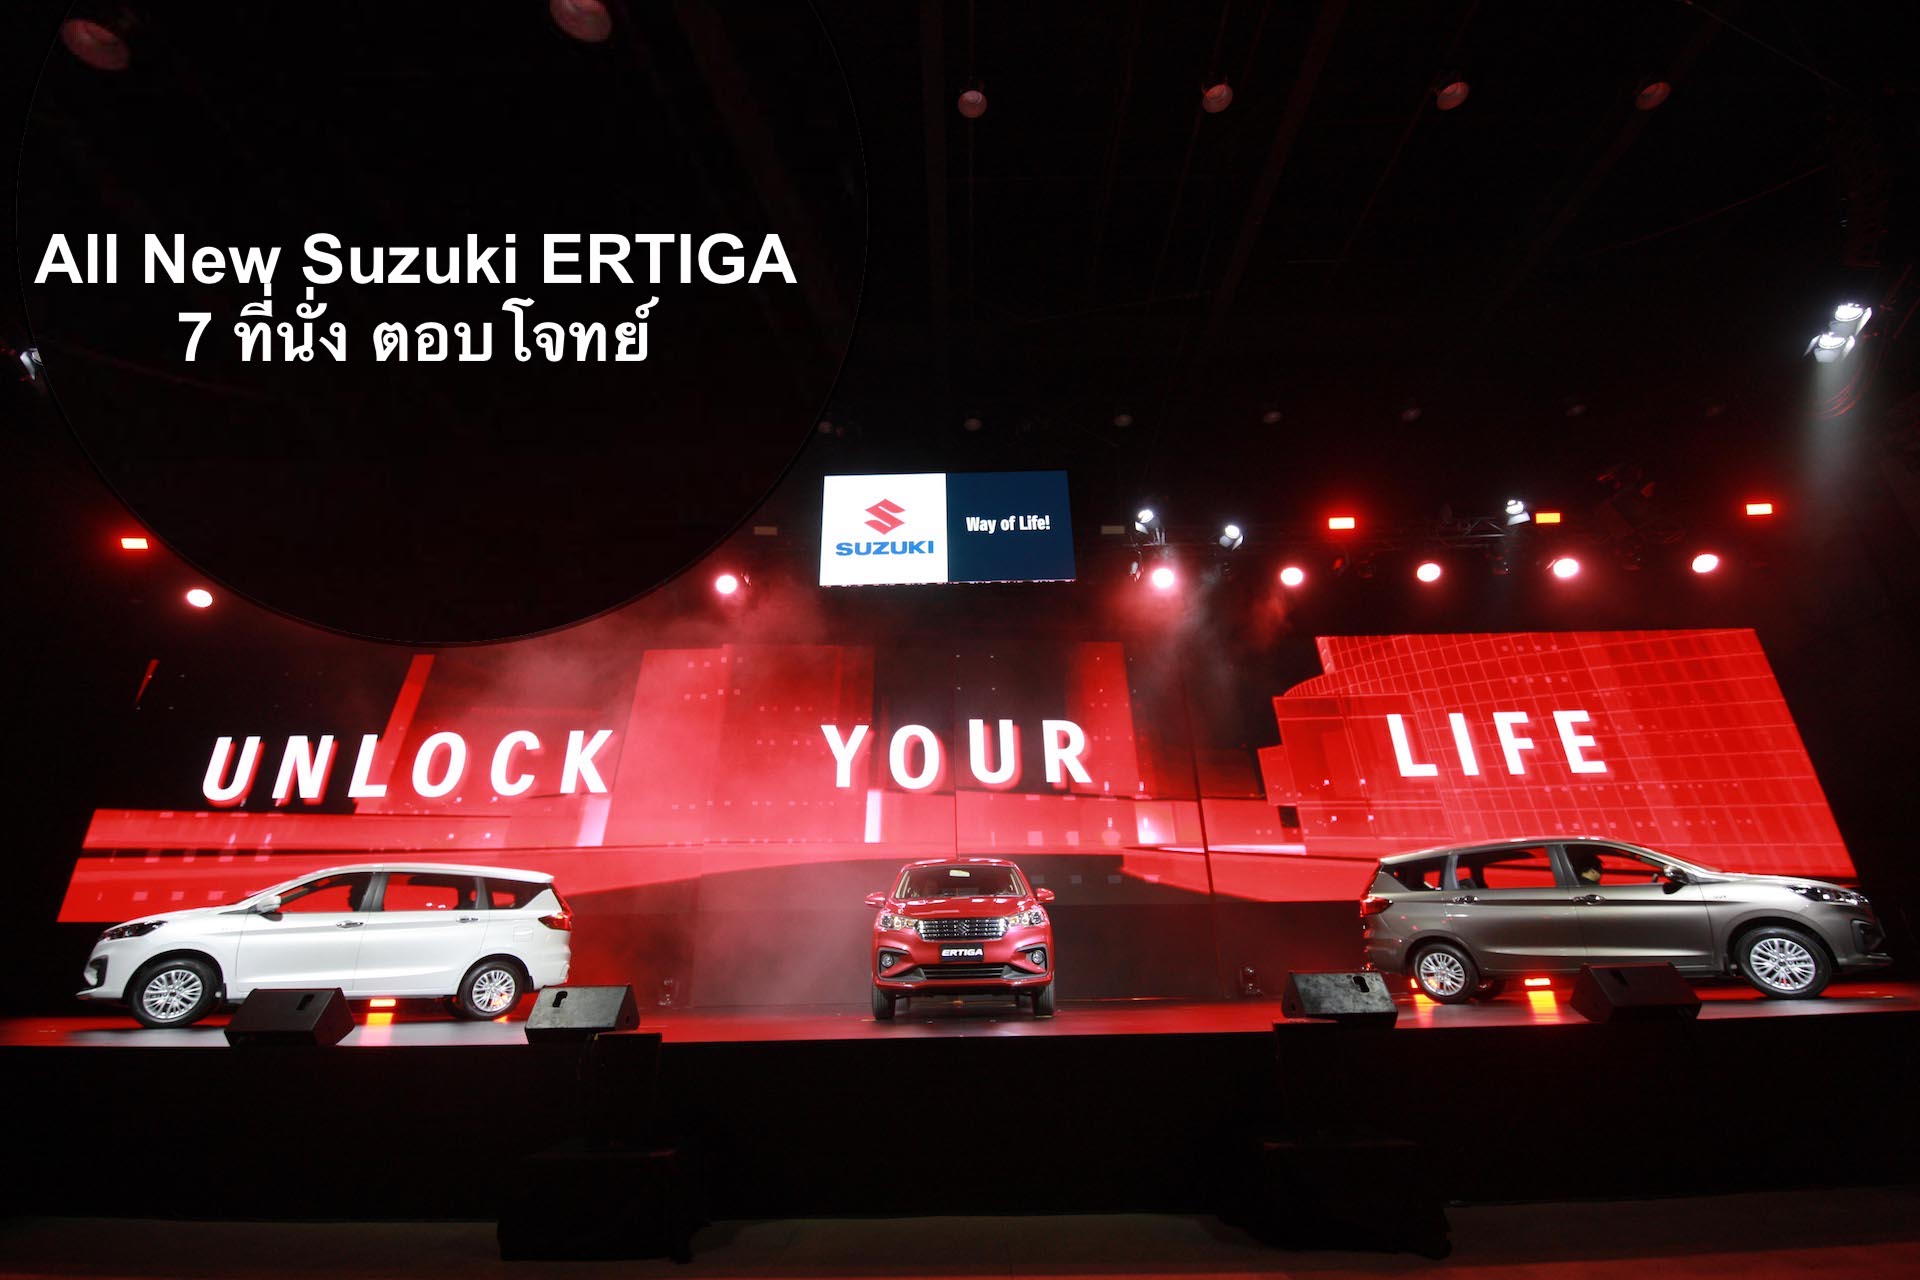 ซูซูกิ สร้างปรากฏการณ์ Way of Life! ครั้งใหม่ ส่ง All New Suzuki ERTIGA รถยนต์ 7 ที่นั่ง เขย่าตลาดประเทศไทย